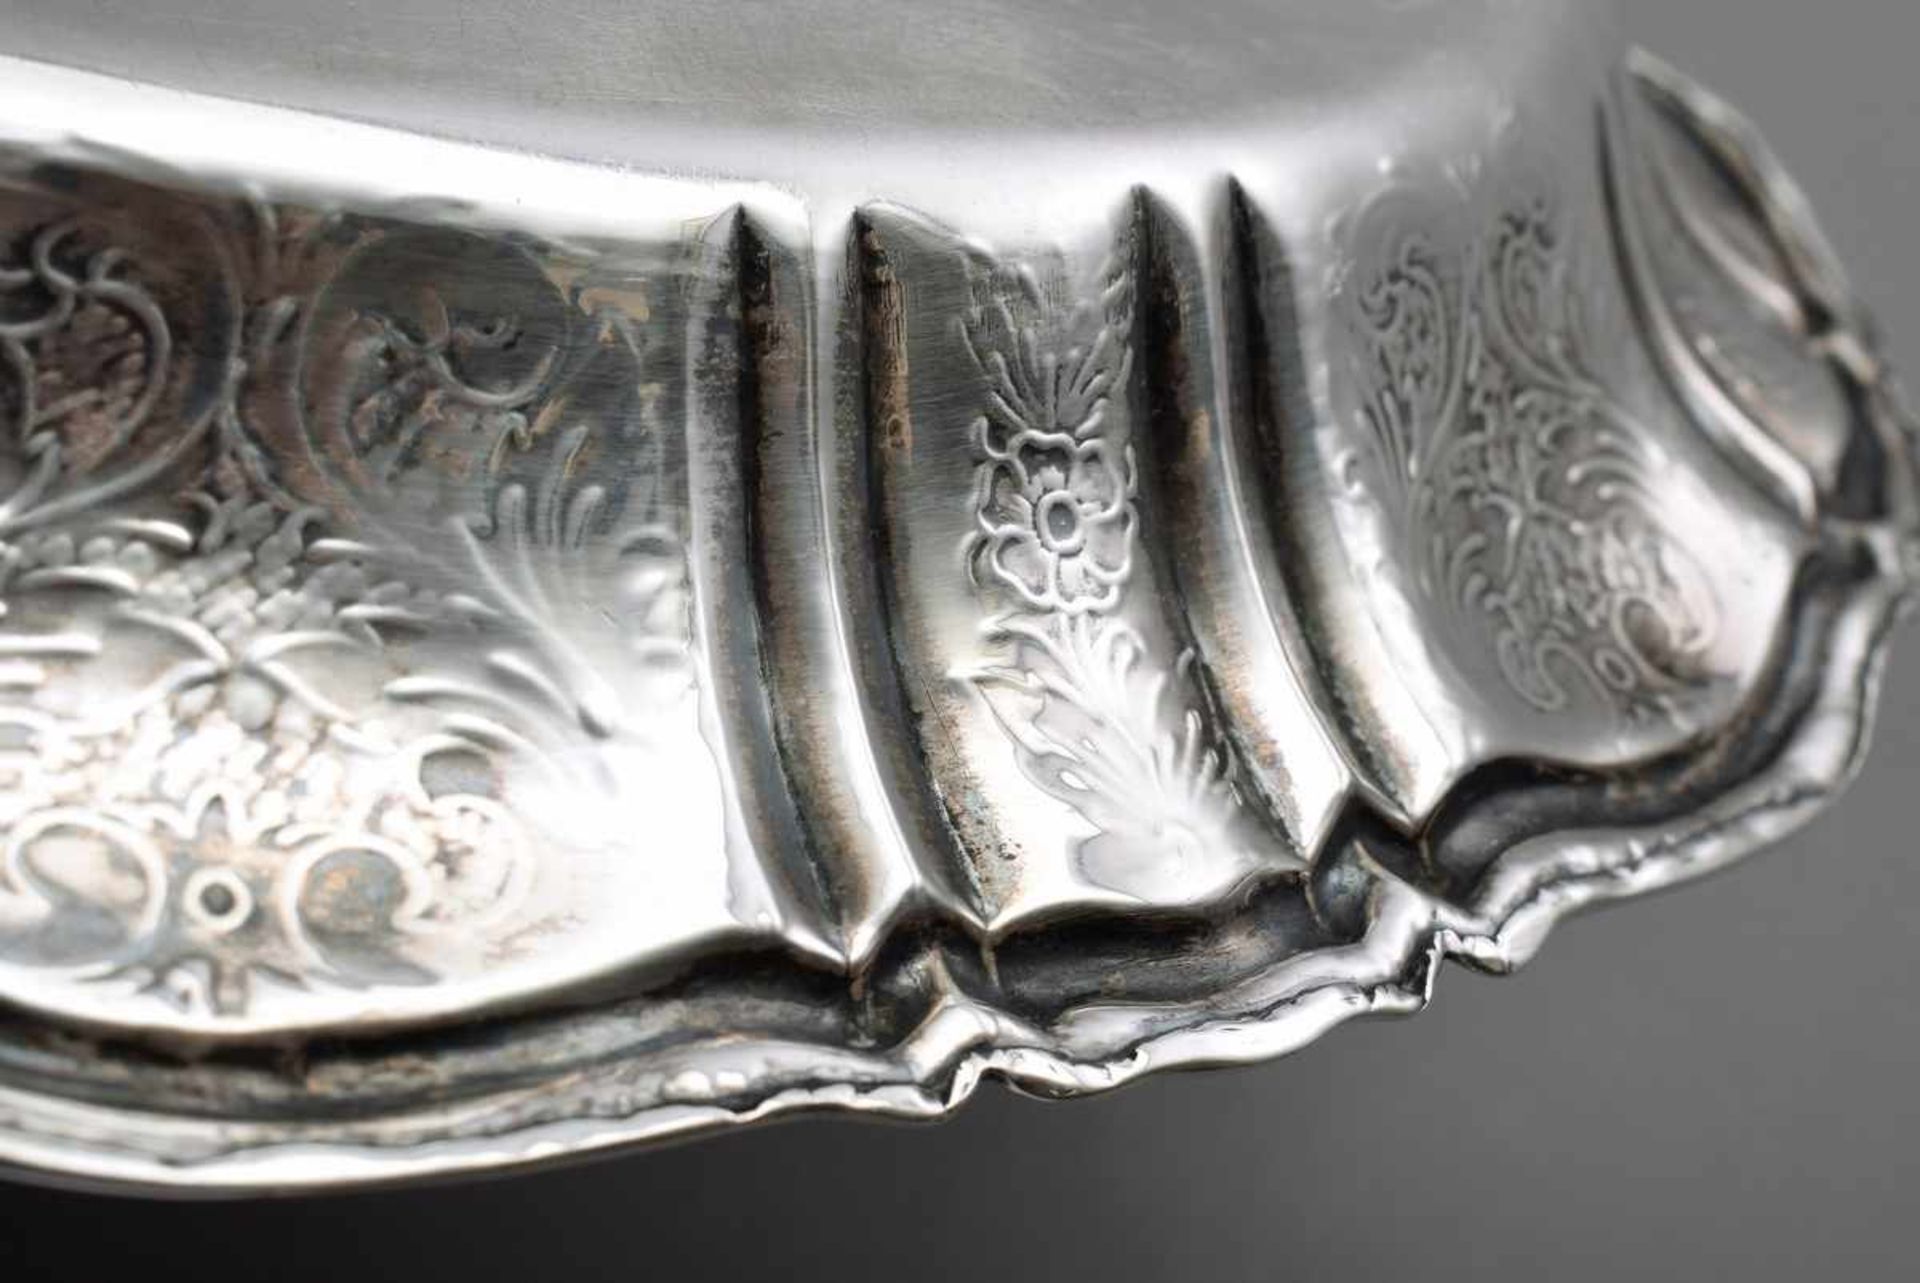 Ovale Schale mit floral graviertem Rand, Silber 830, 177g, 21x14cm, leichte KratzspurenOval bowl - Bild 2 aus 2